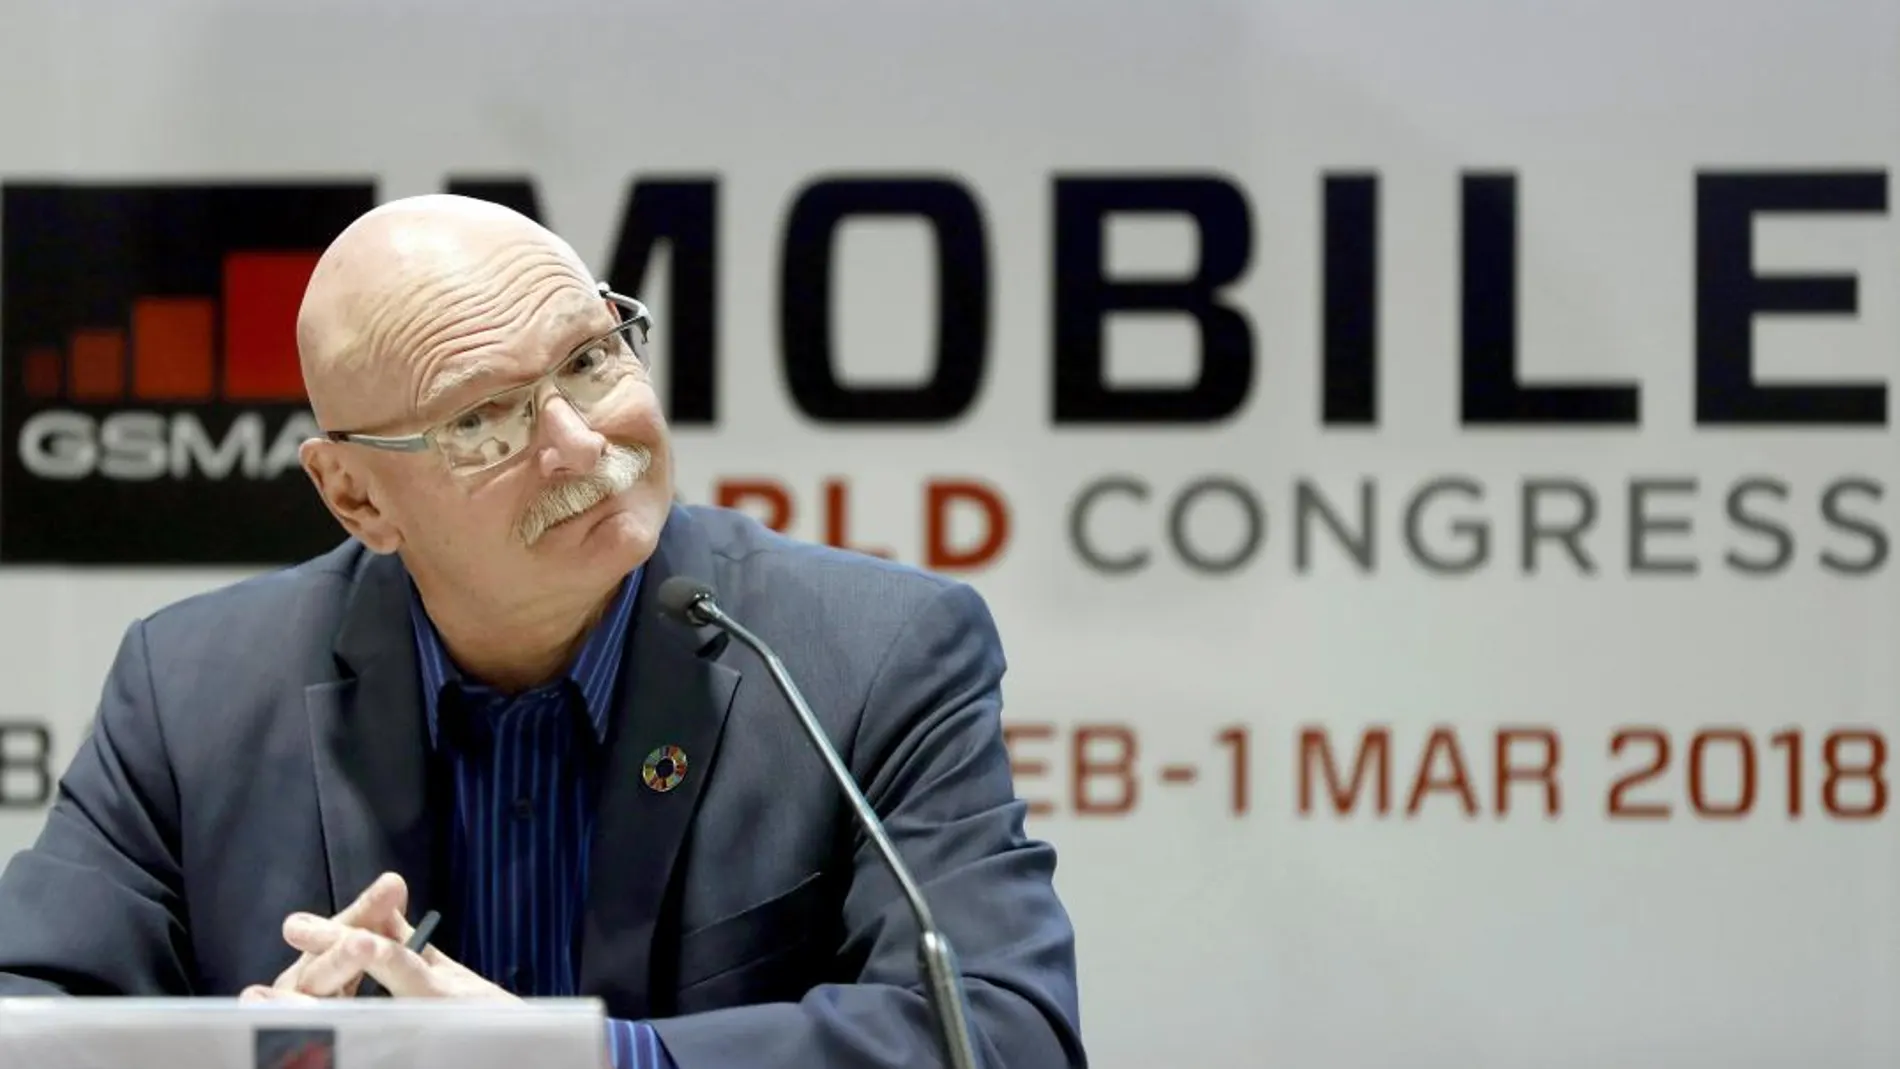 El consejero delegado de la asociación de operadores móviles GSMA, John Hoffman, durante la presentación en rueda de prensa del Mobile World Congress (MWC) 2108/Efe